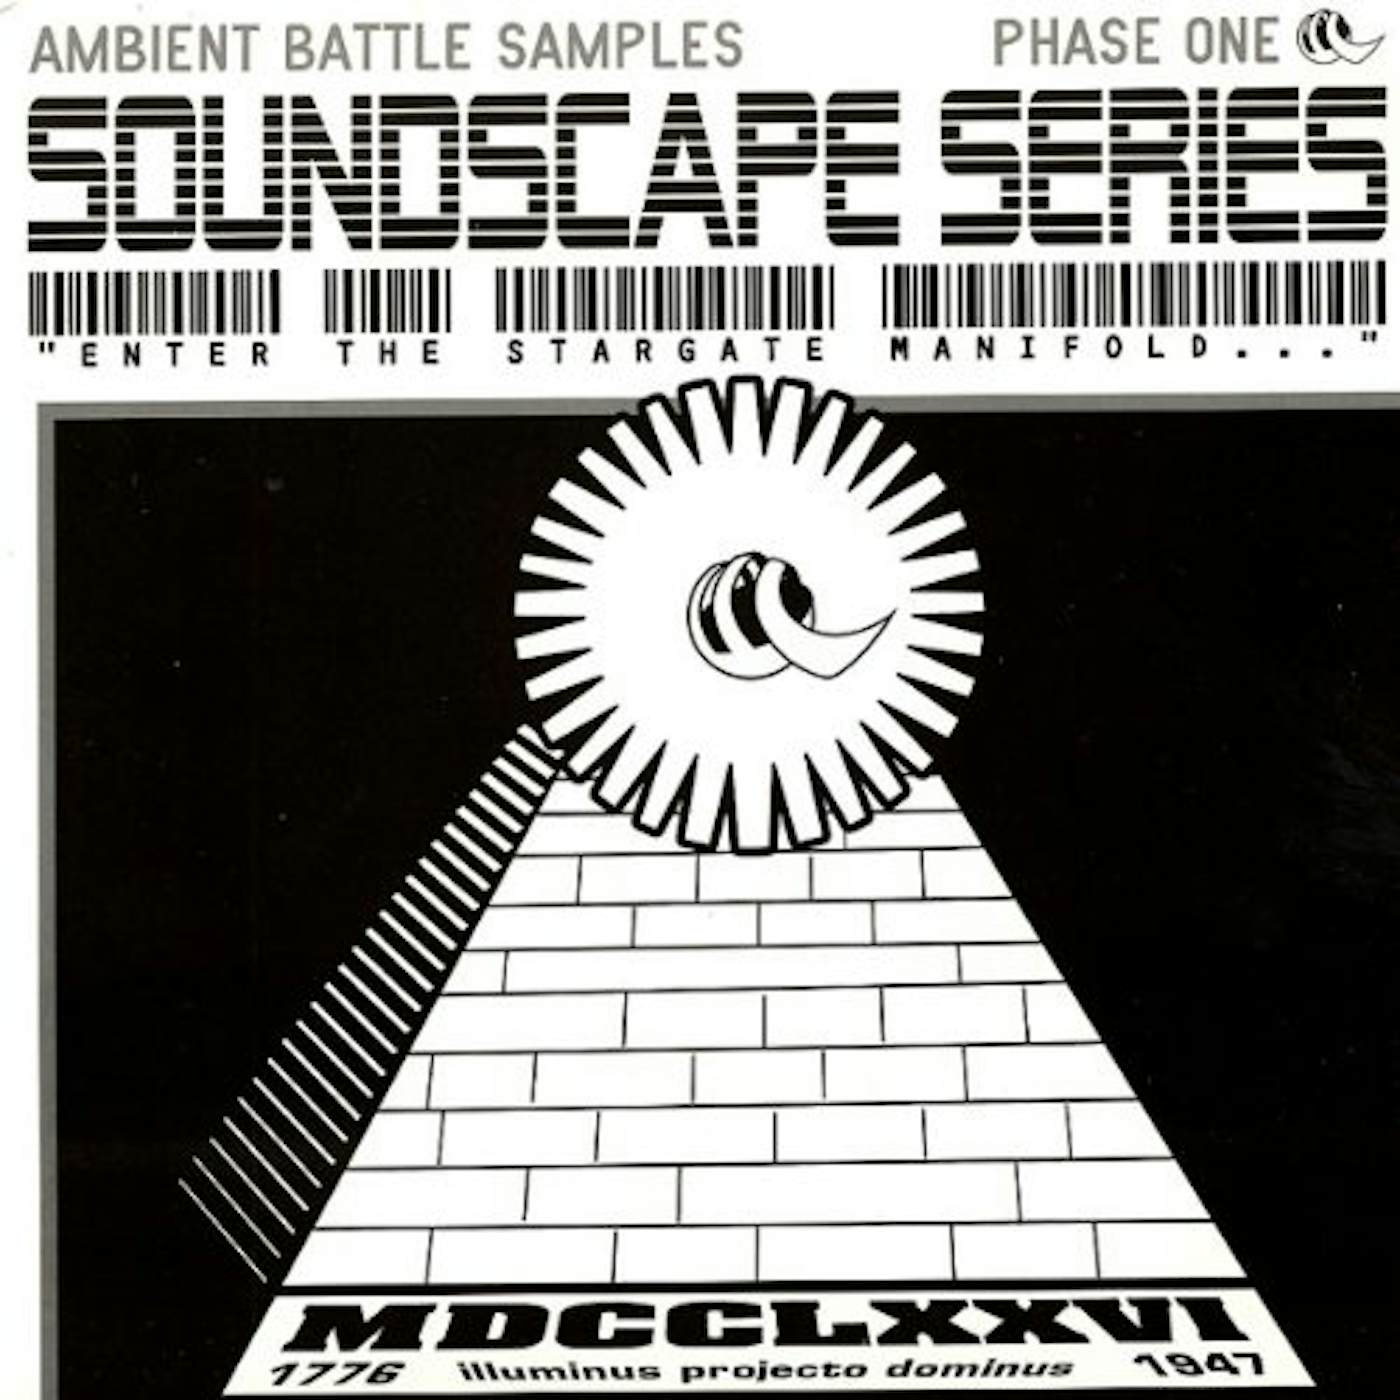 Soundscape Series Ambient Battle Samples Vinyl Record